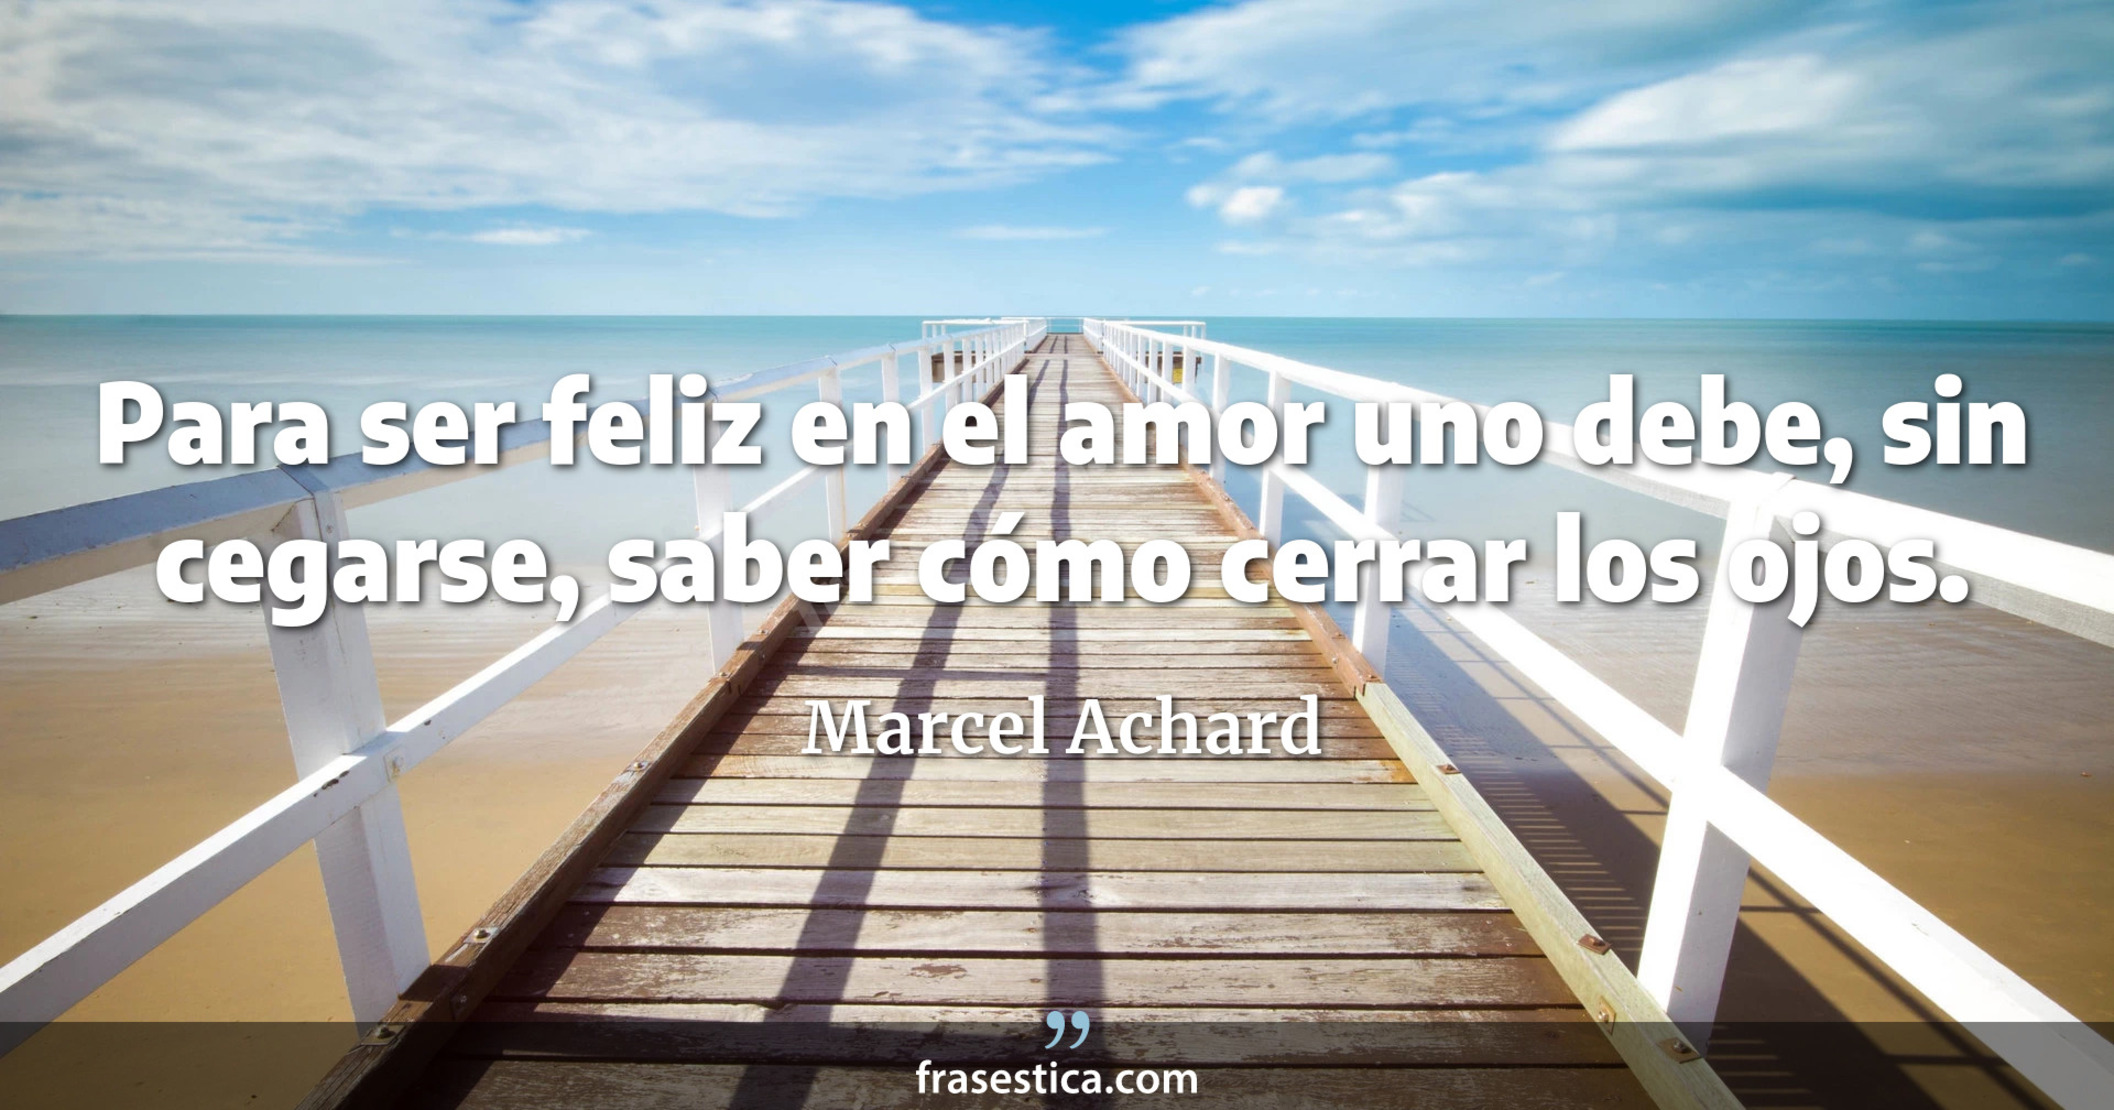 Para ser feliz en el amor uno debe, sin cegarse, saber cómo cerrar los ojos. - Marcel Achard